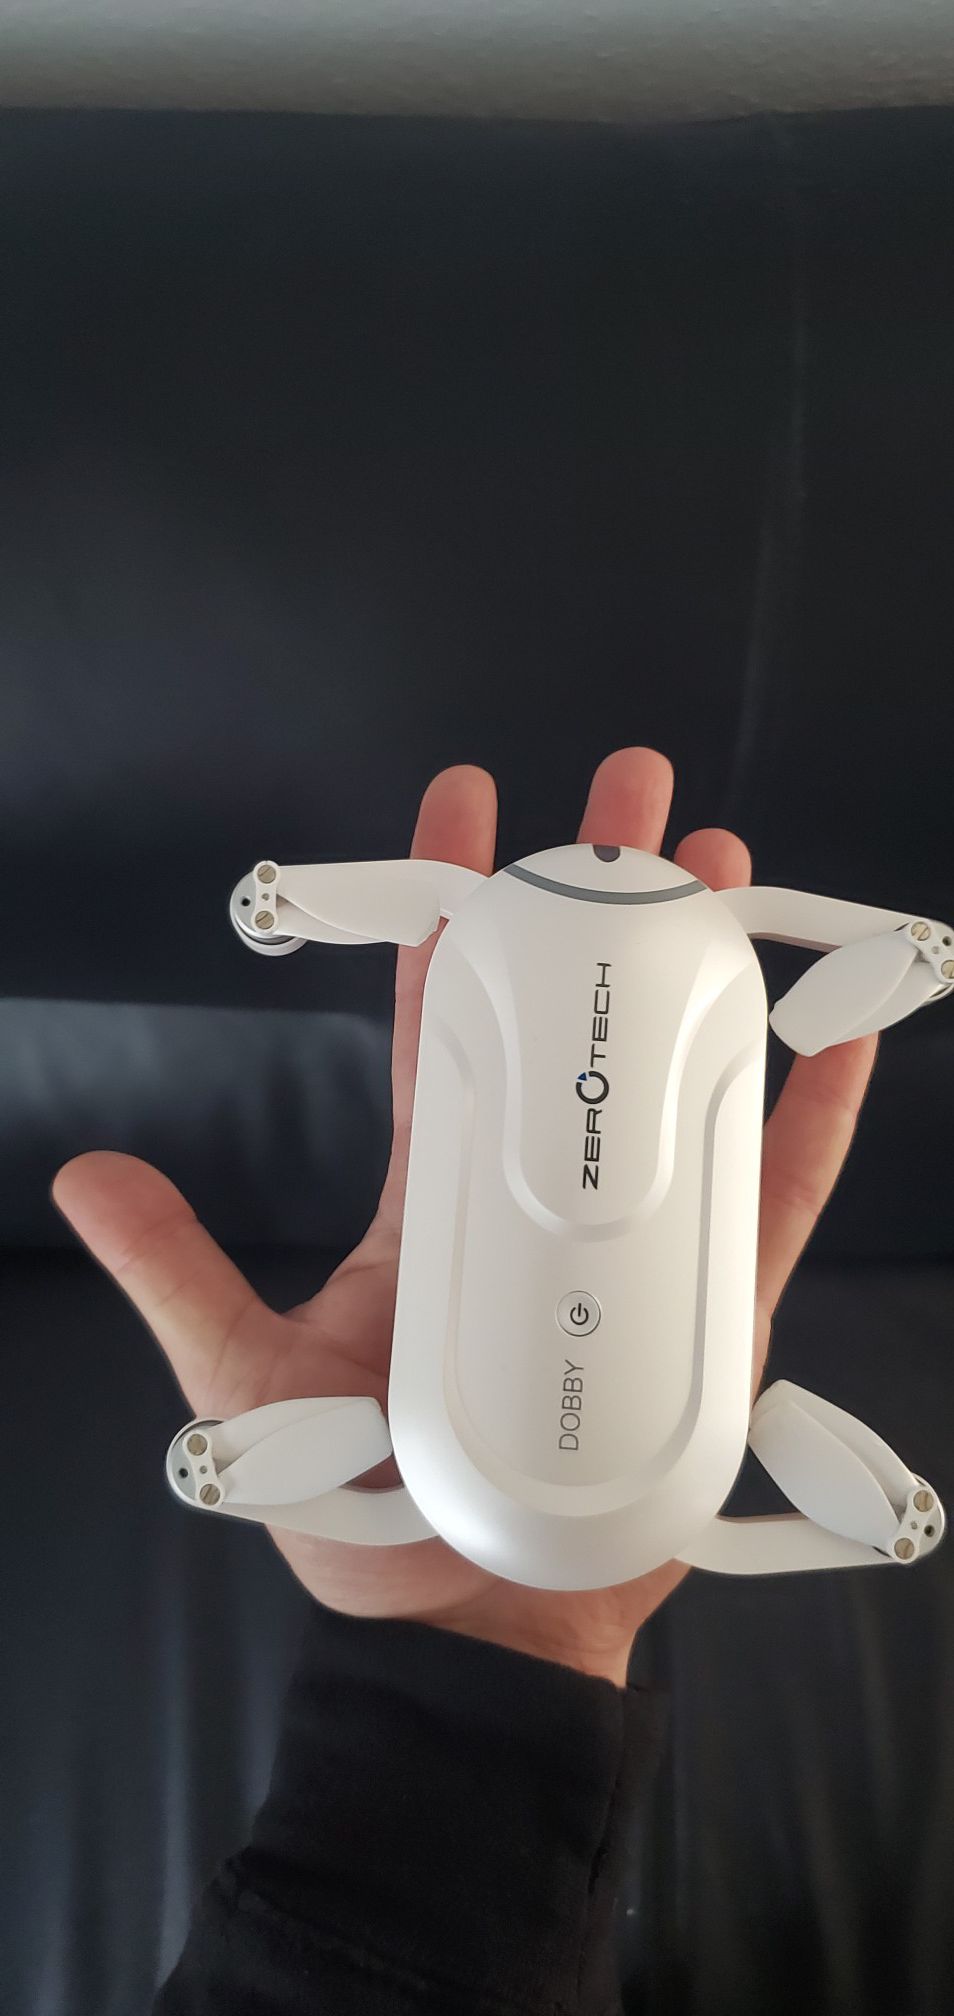 DOBBY Mini Selfie drone